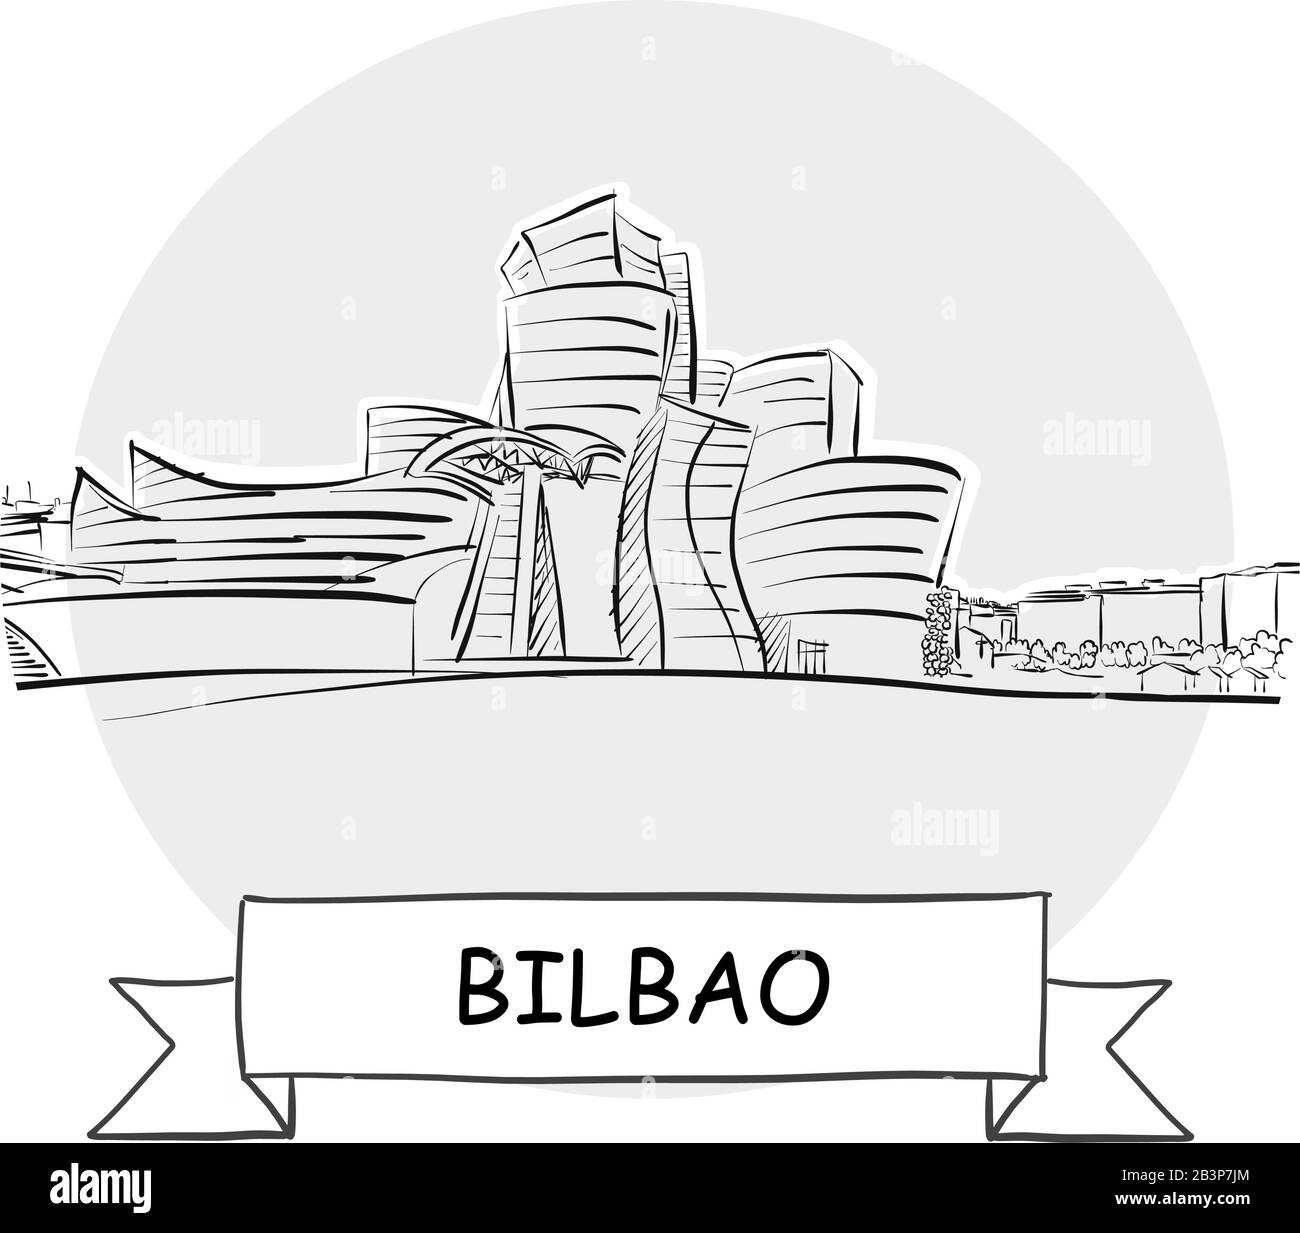 Panneau Vectoriel Bilbao Cityscape. Illustration d'un dessin au trait avec ruban et titre. Illustration de Vecteur